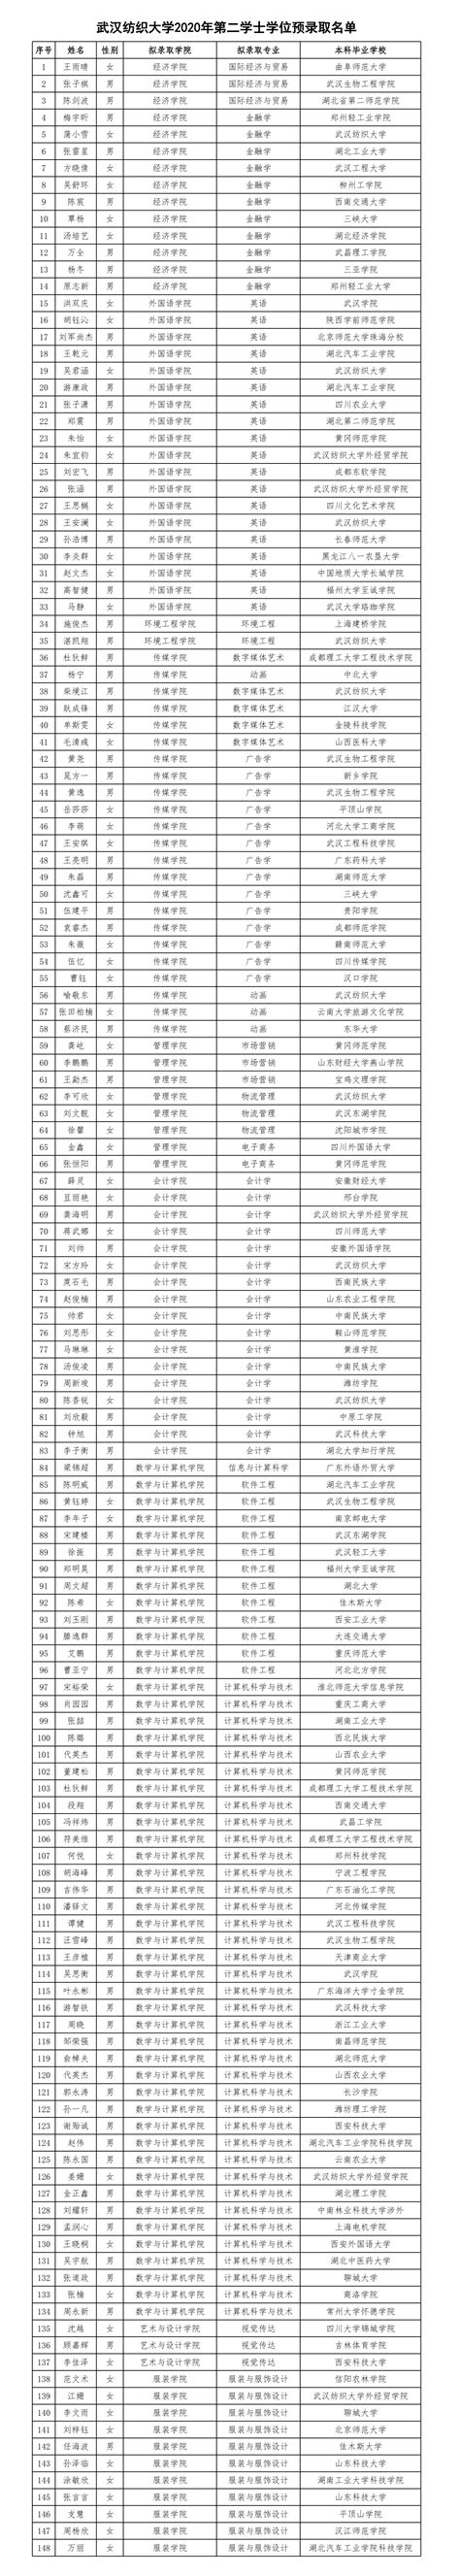 2021年武汉纺织大学外经贸学院普通专升本预录取名单通知_湖北普通专升本网